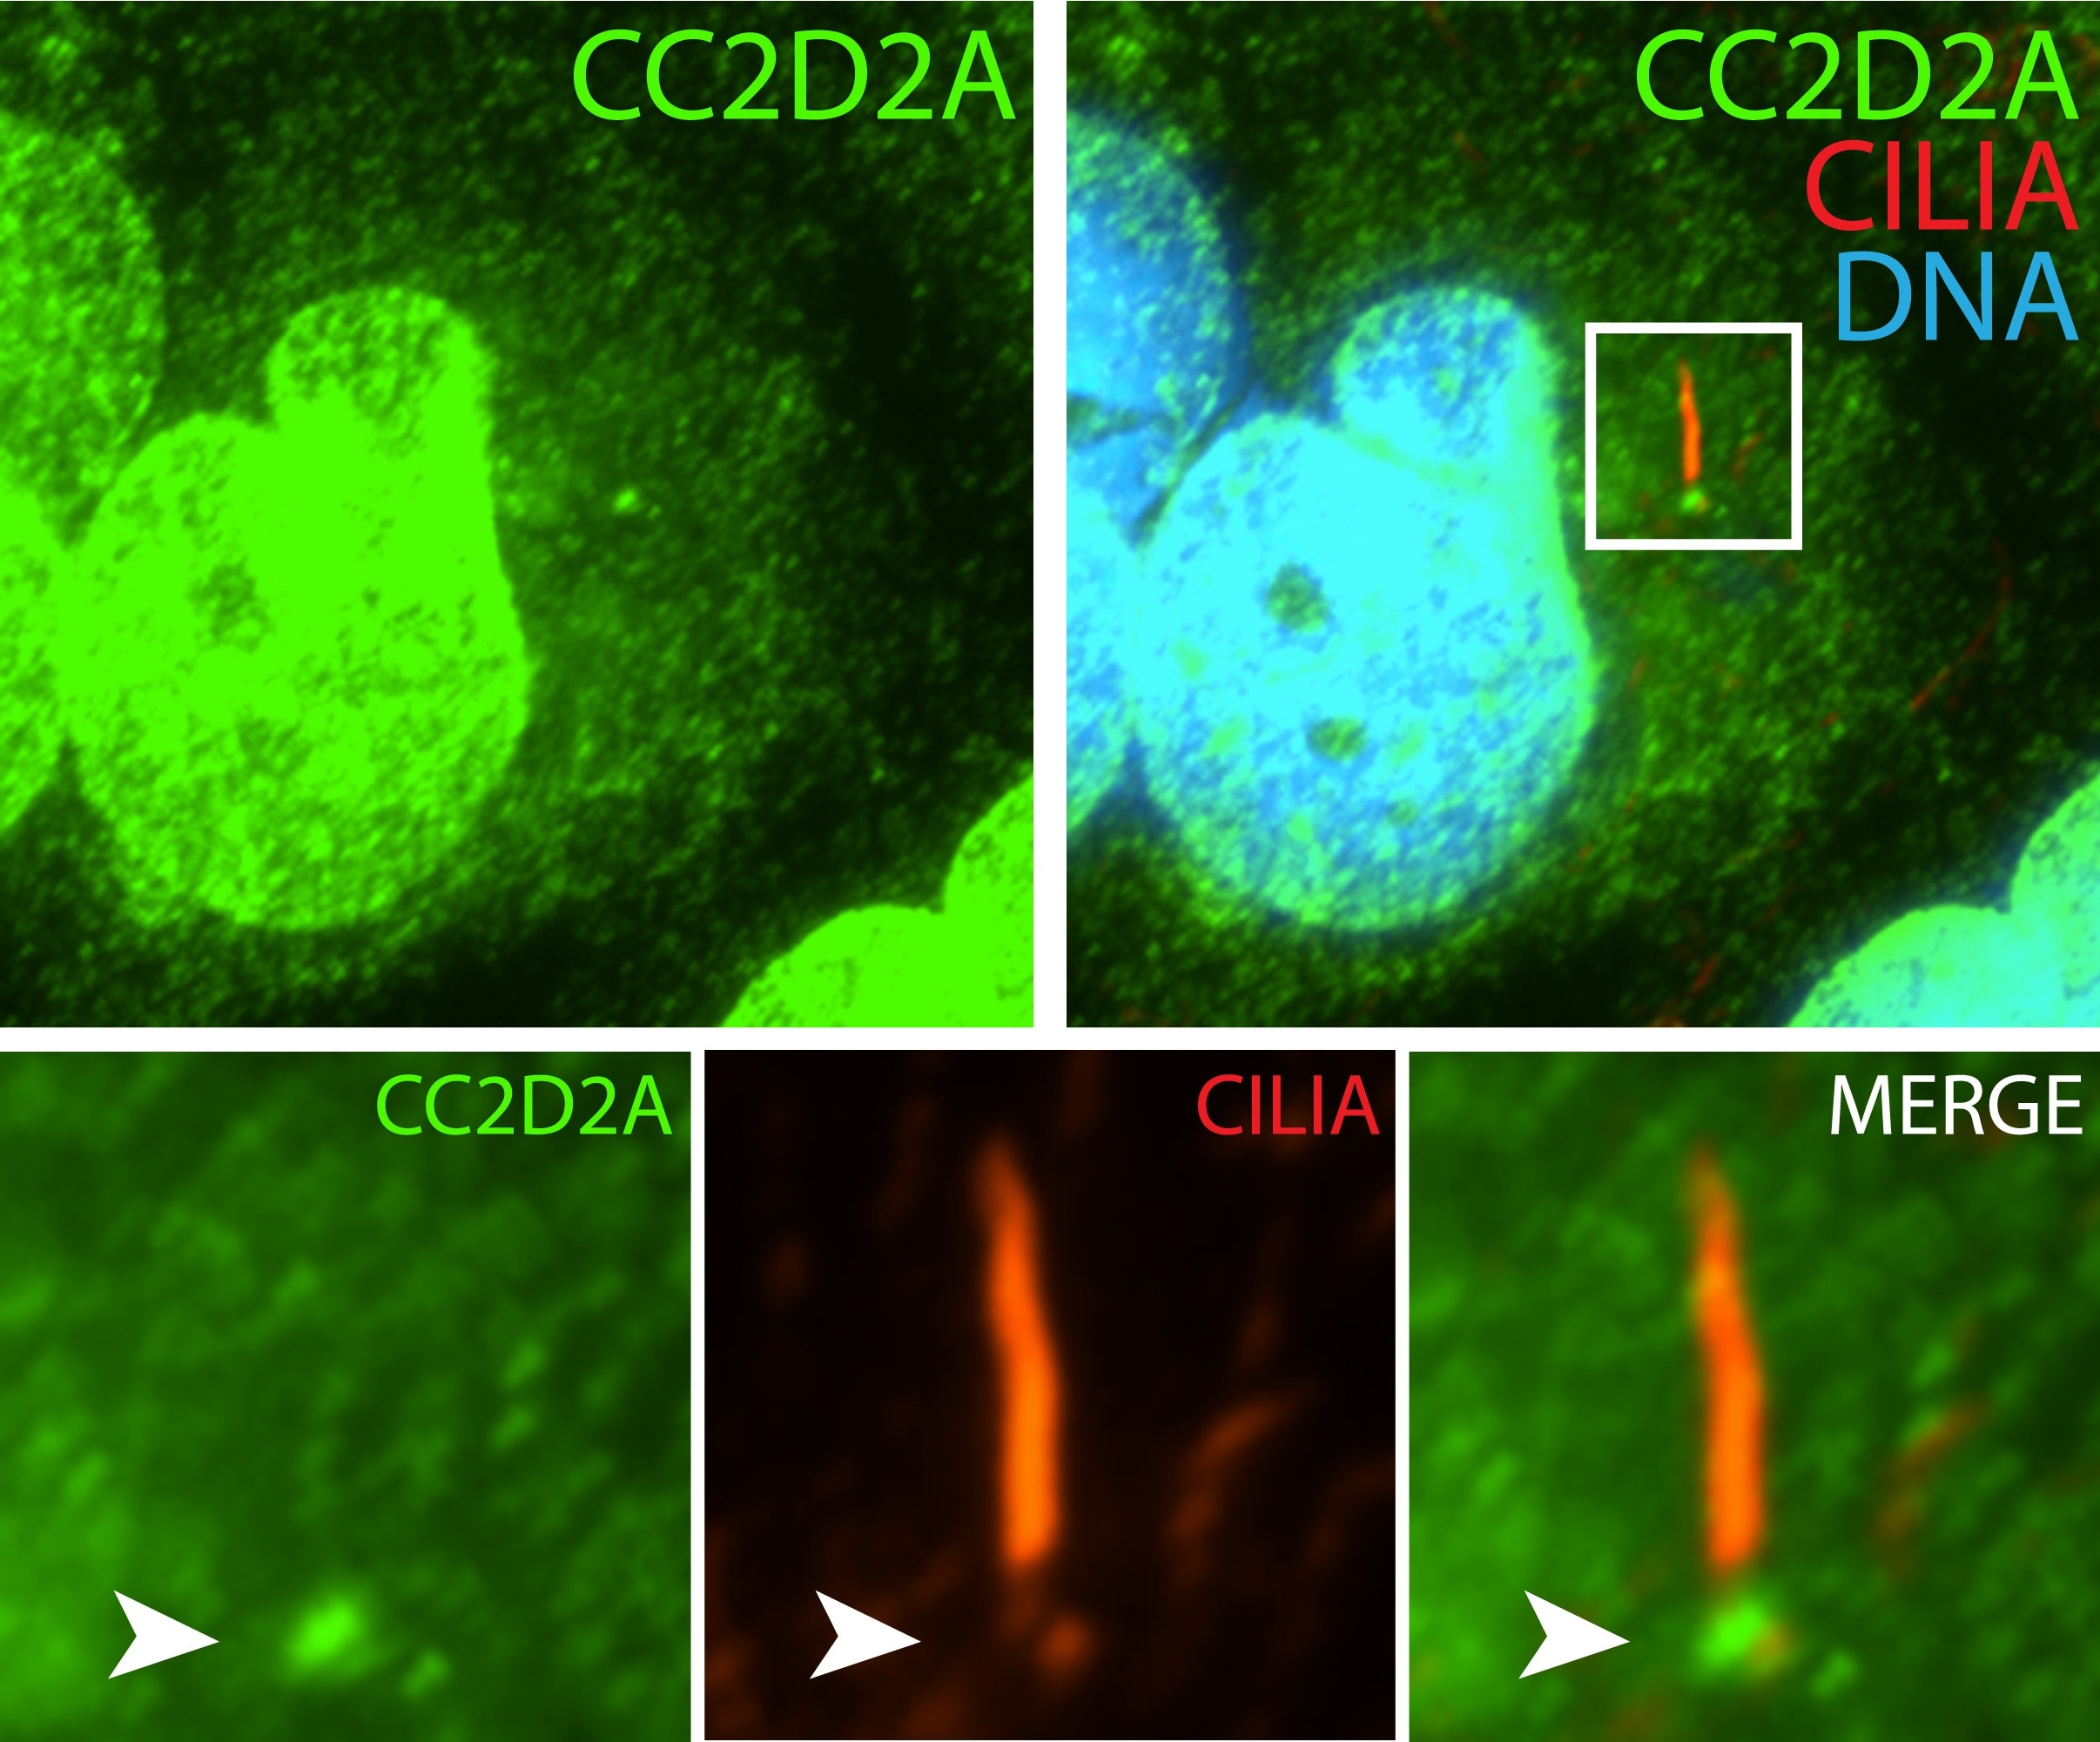 CC2D2A Polyclonal antibody